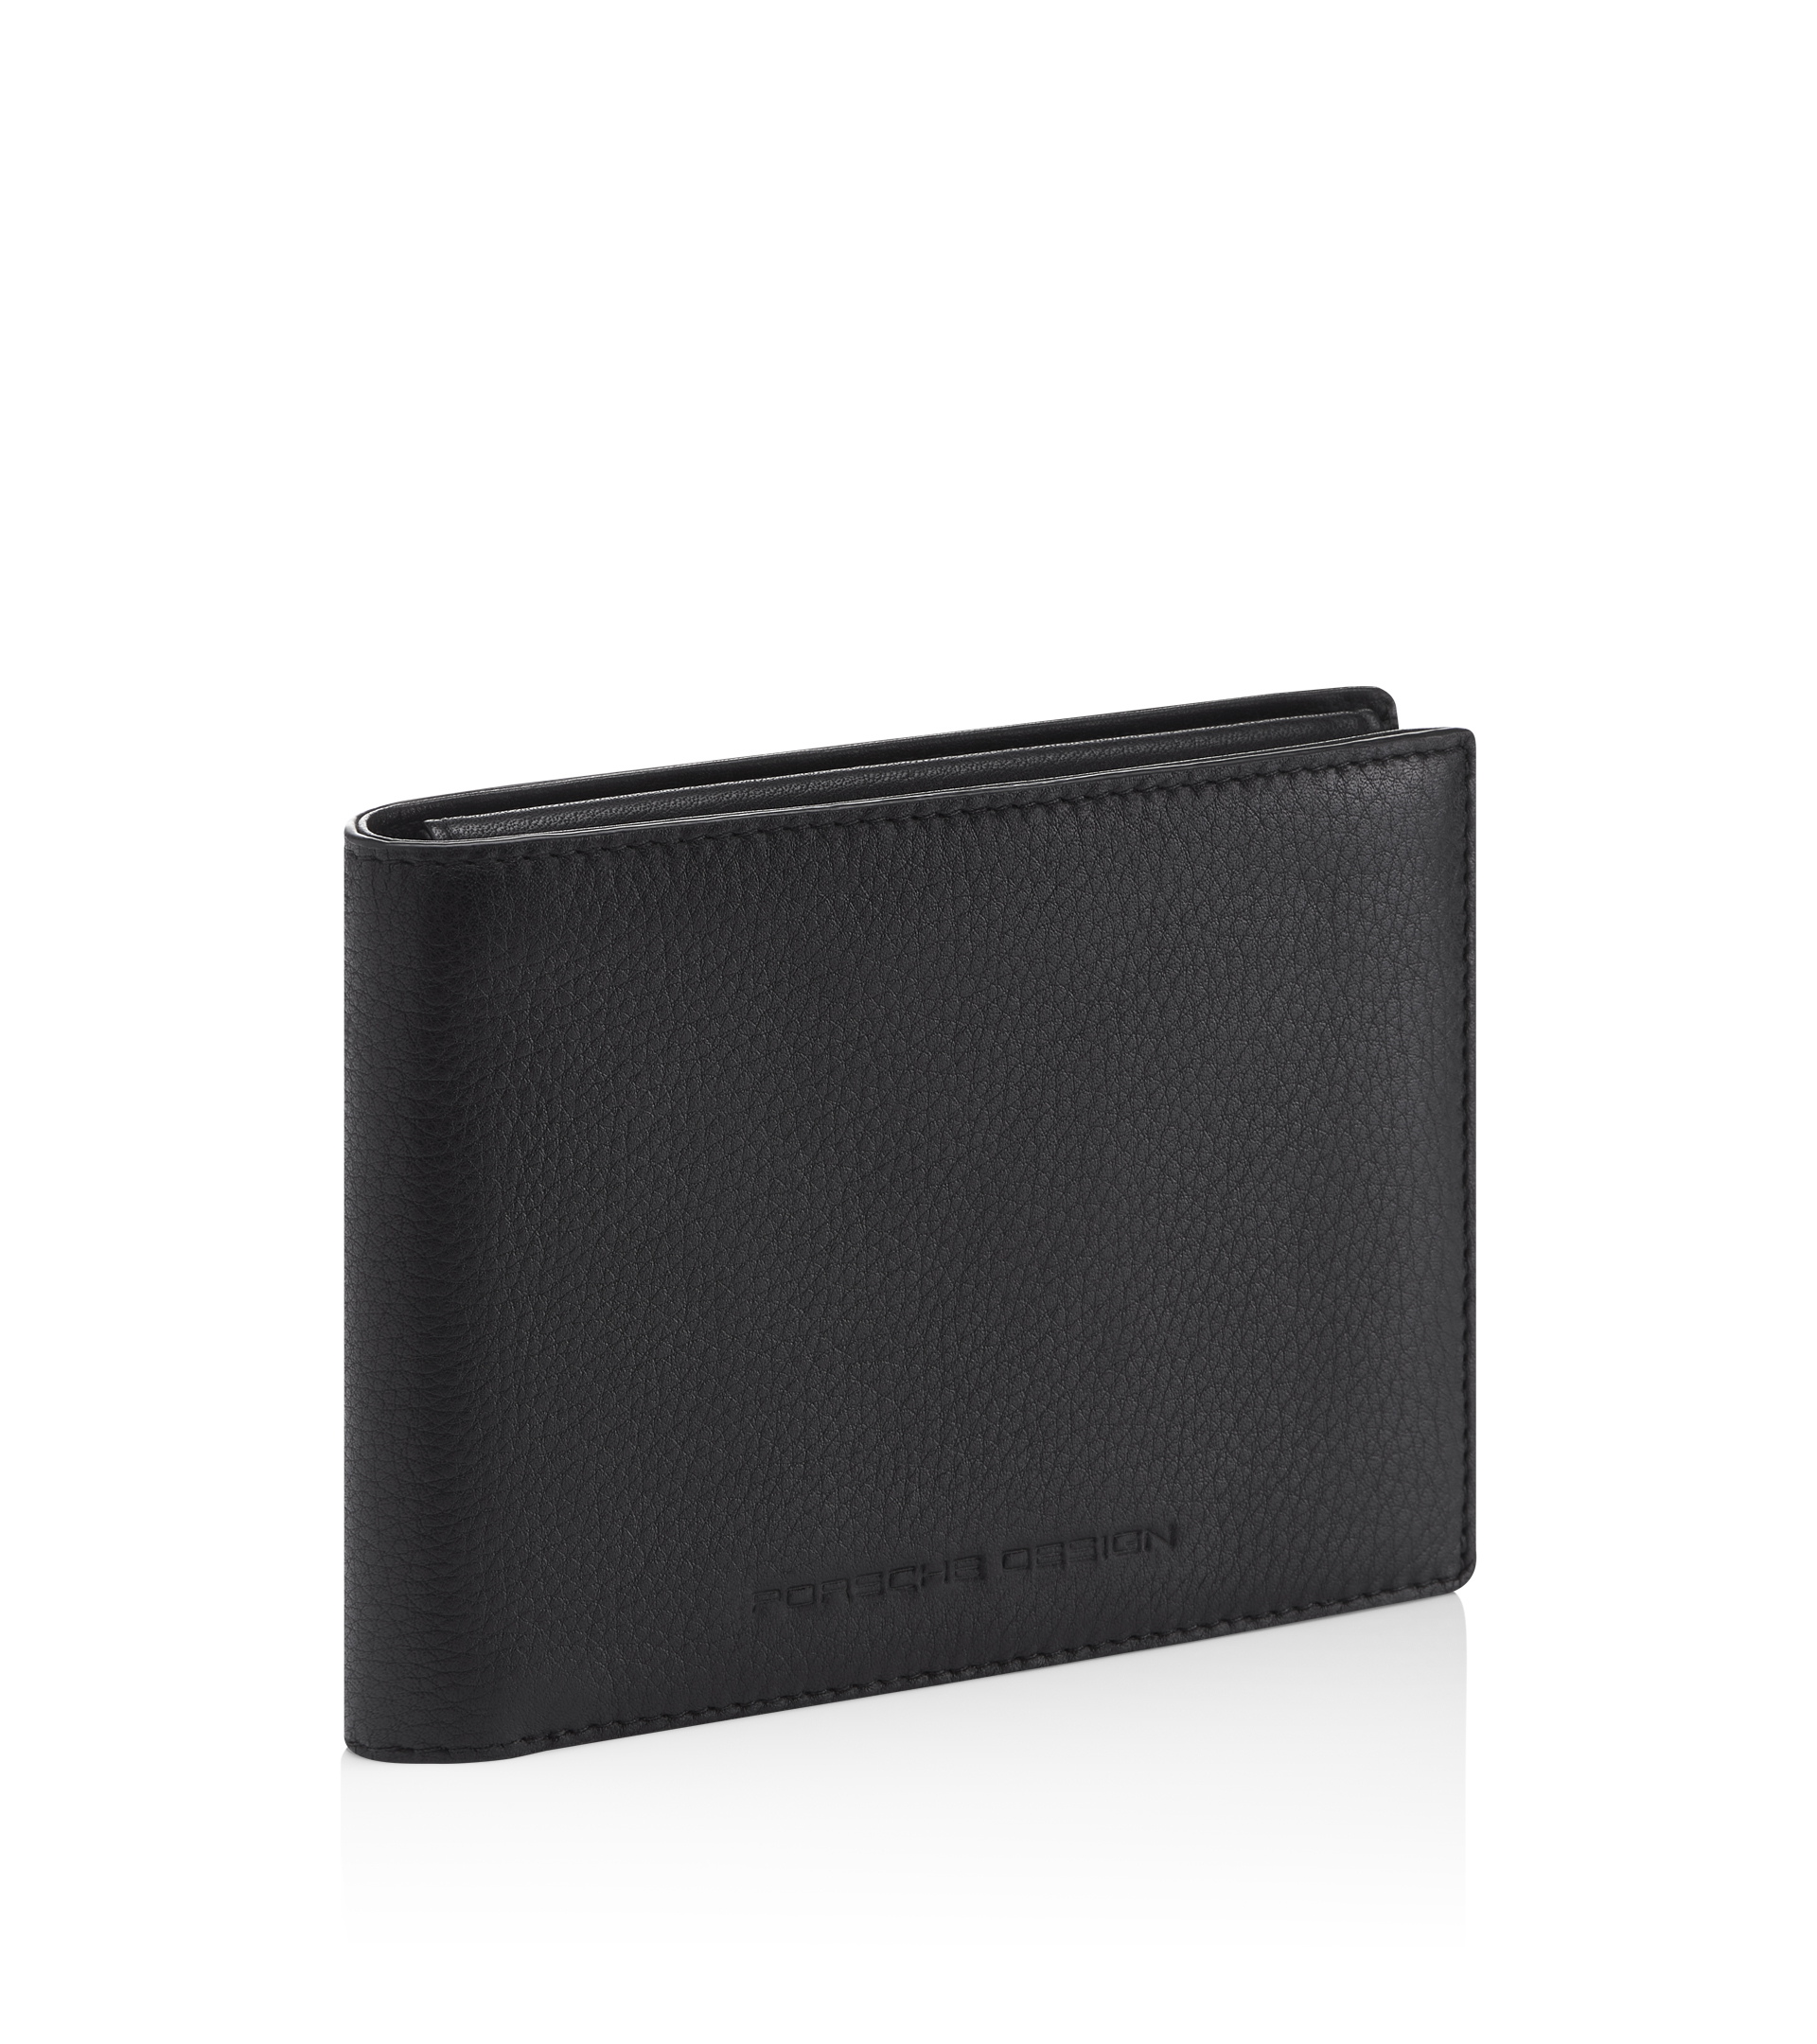 Emporio Armani Men's Leather Wallet